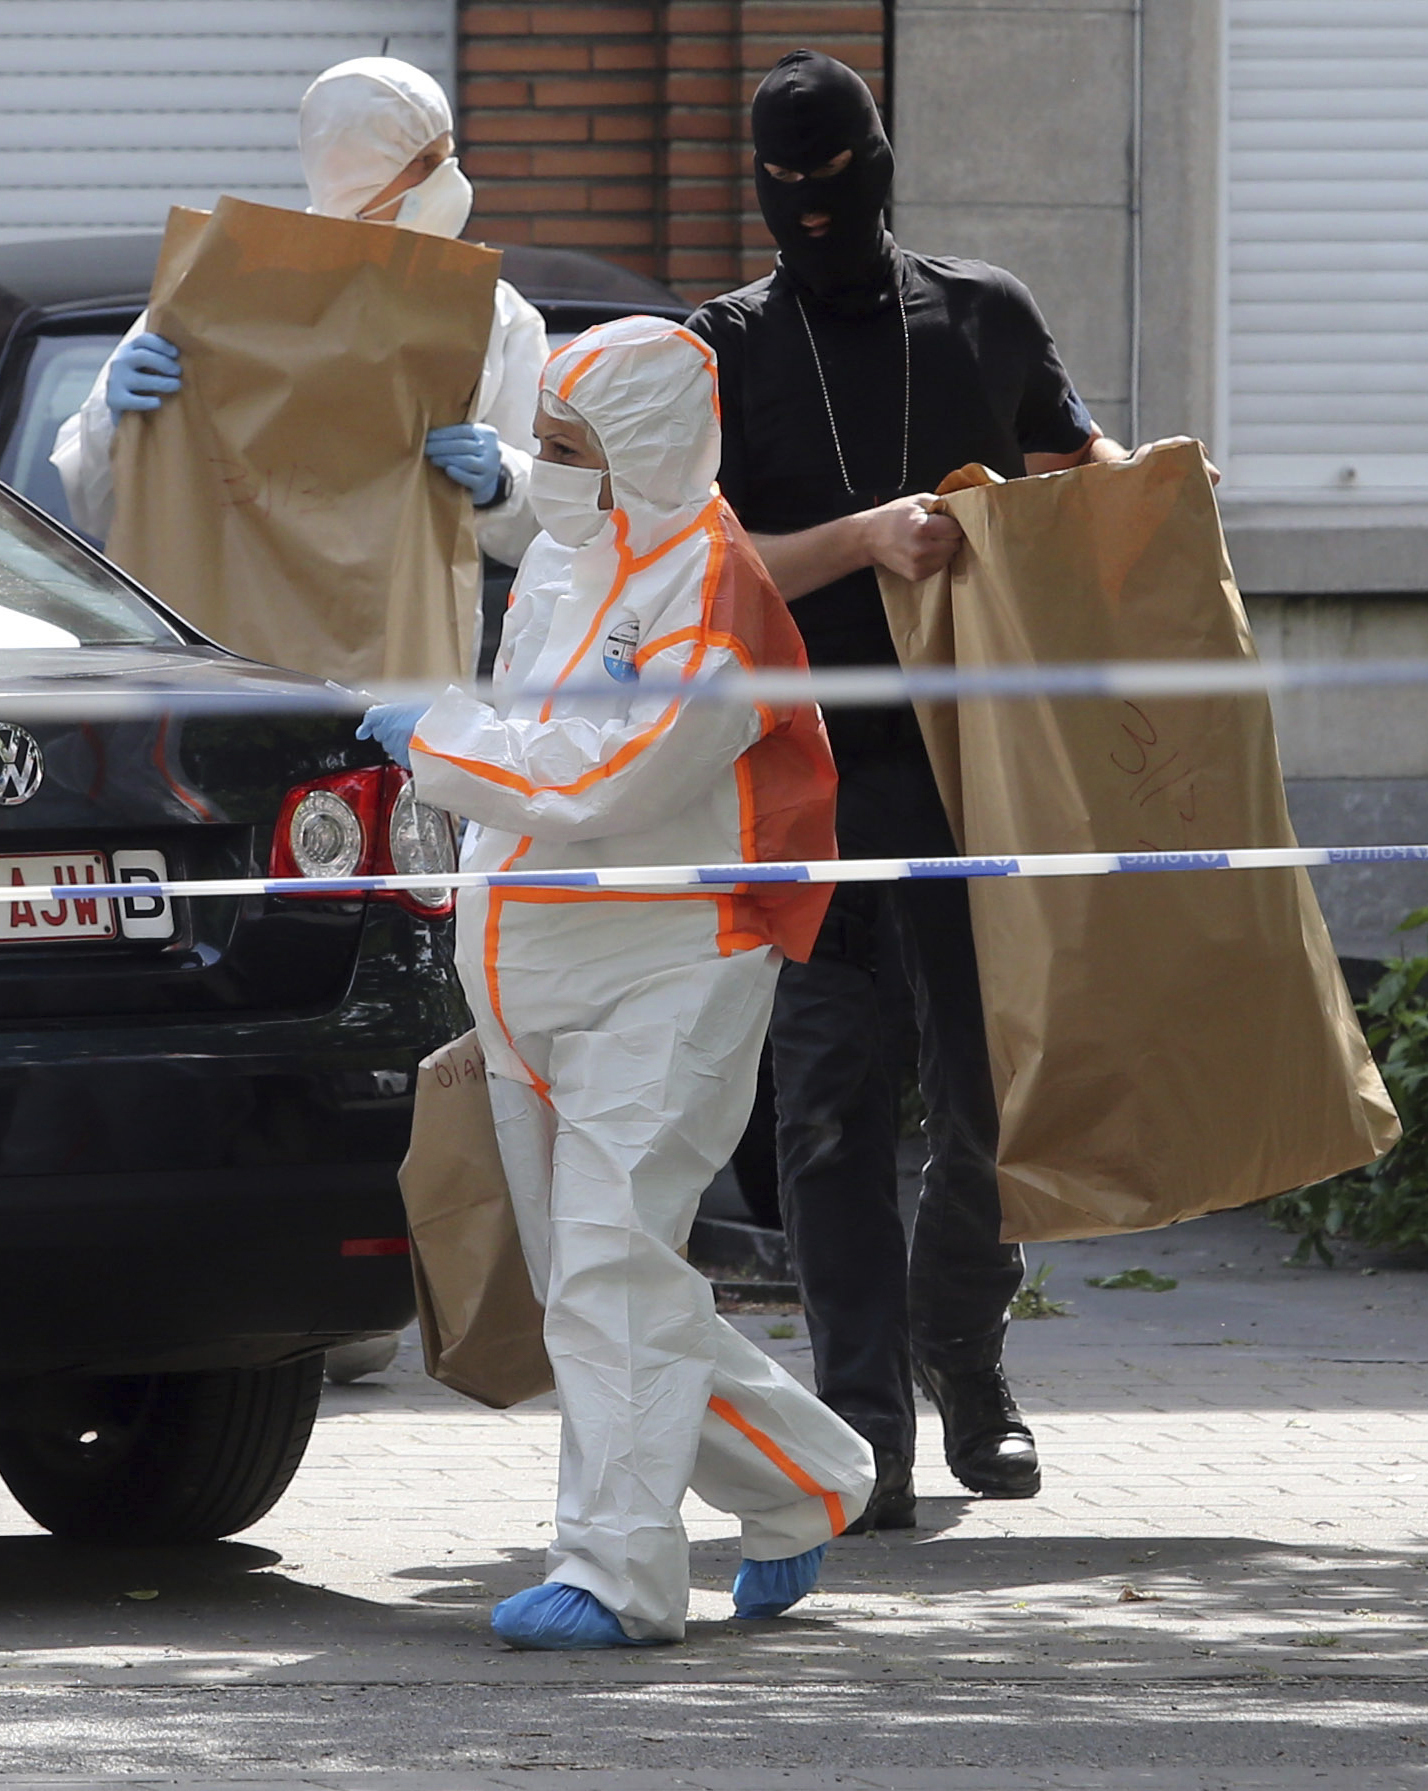 Спецполицаи и специалисти по експлозиви извършиха обиск в жилище в квартал ”Моленбек” в Брюксел